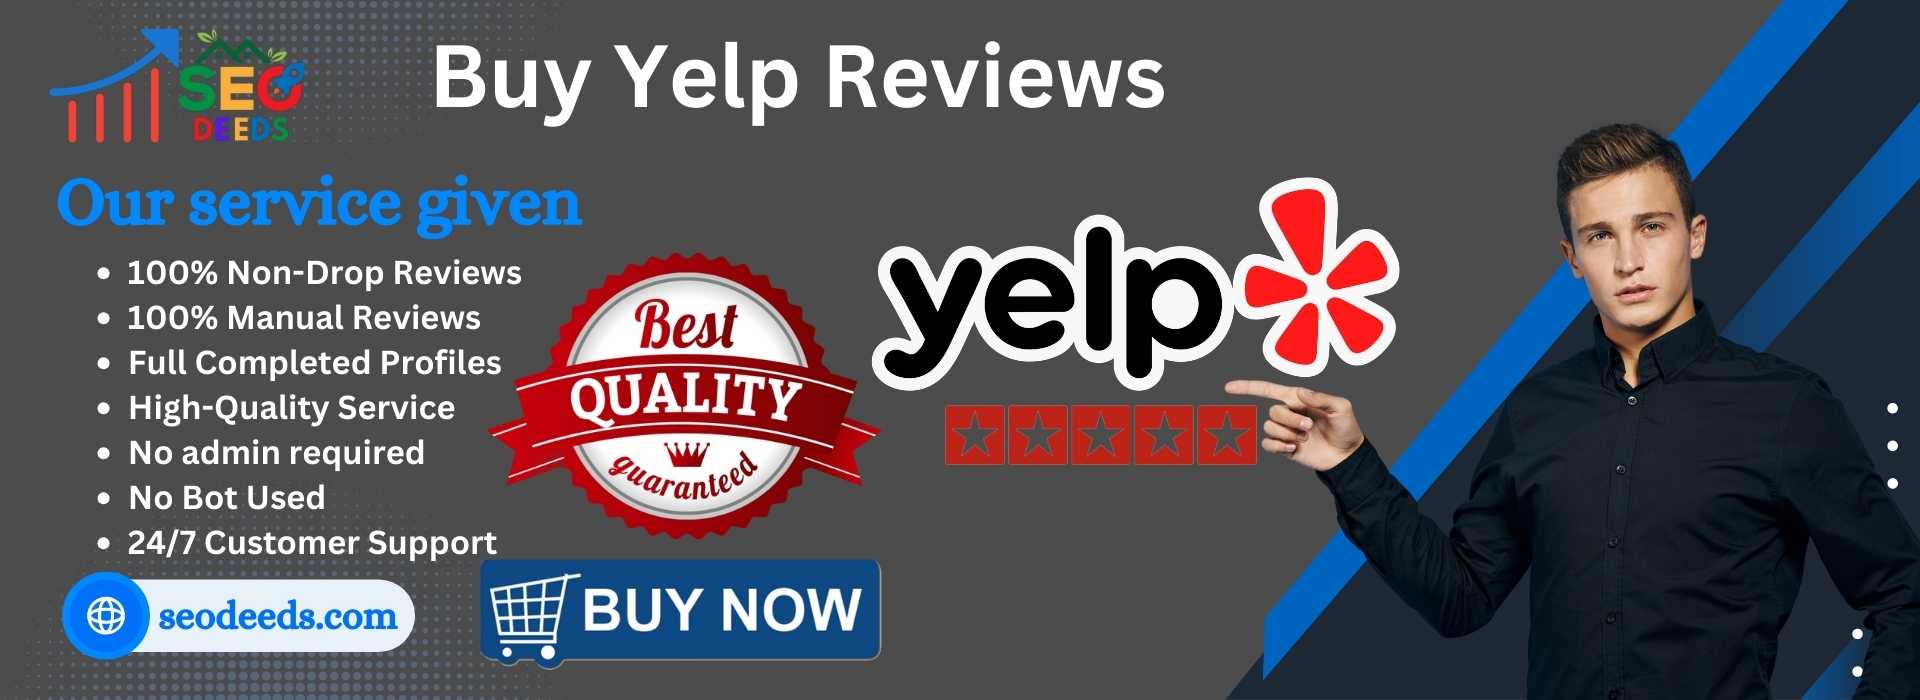 Buy Yelp Reviews2